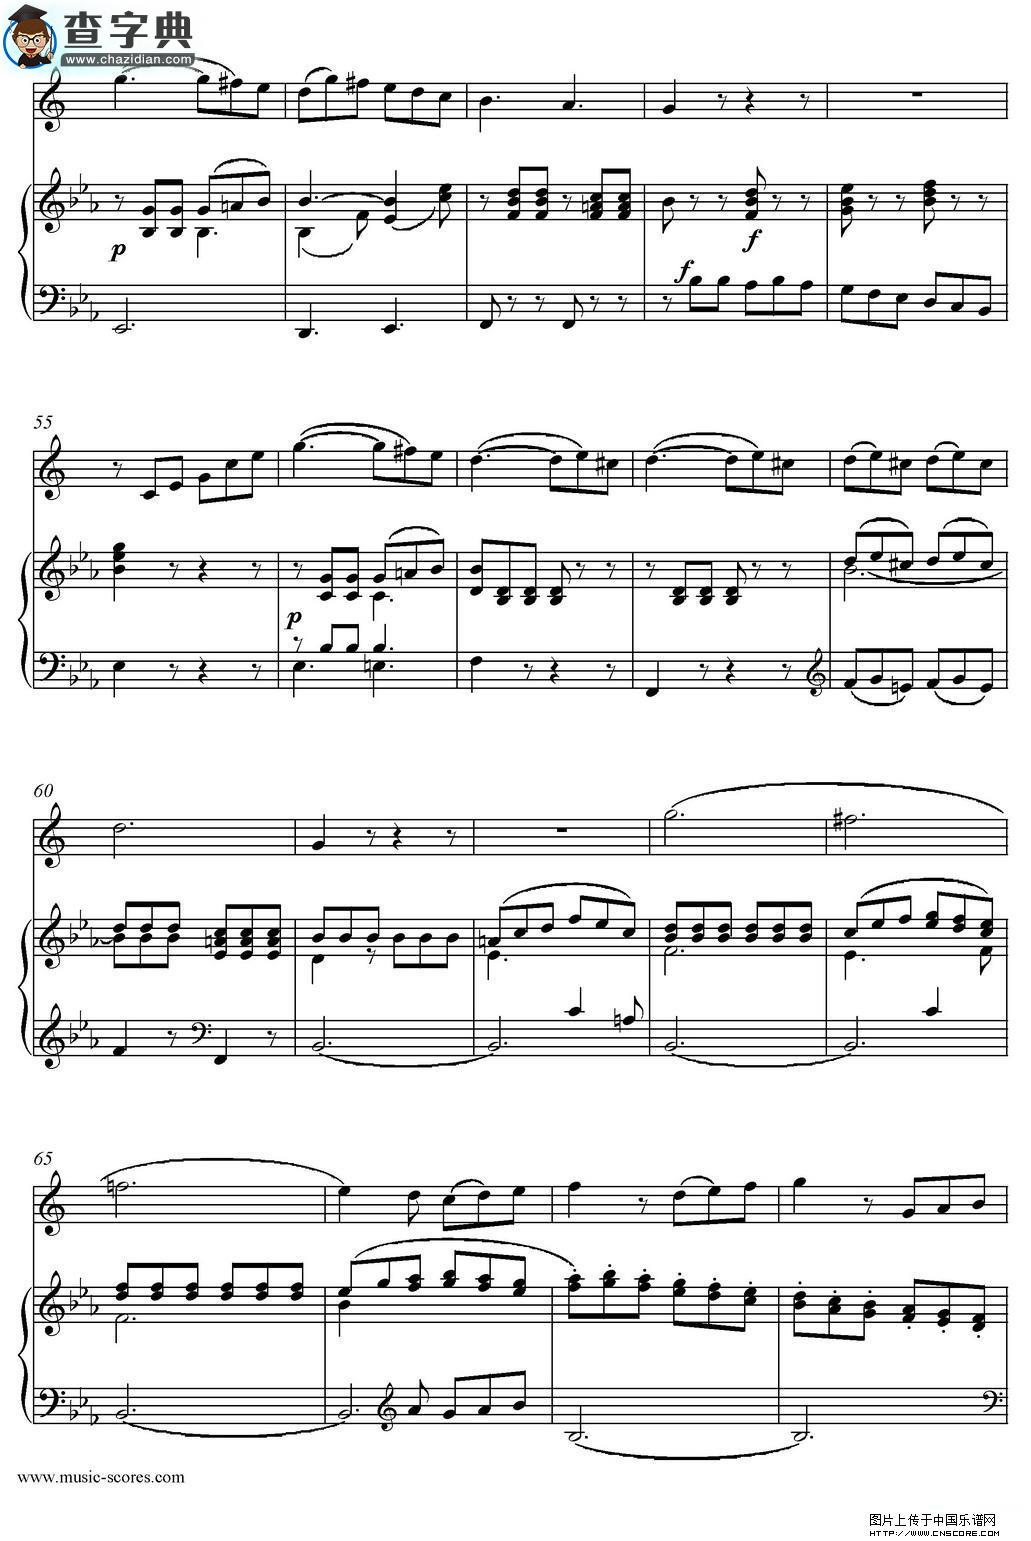 Mozart：Concerto KV495 No.4-3st Rondo 回旋曲萨克斯谱